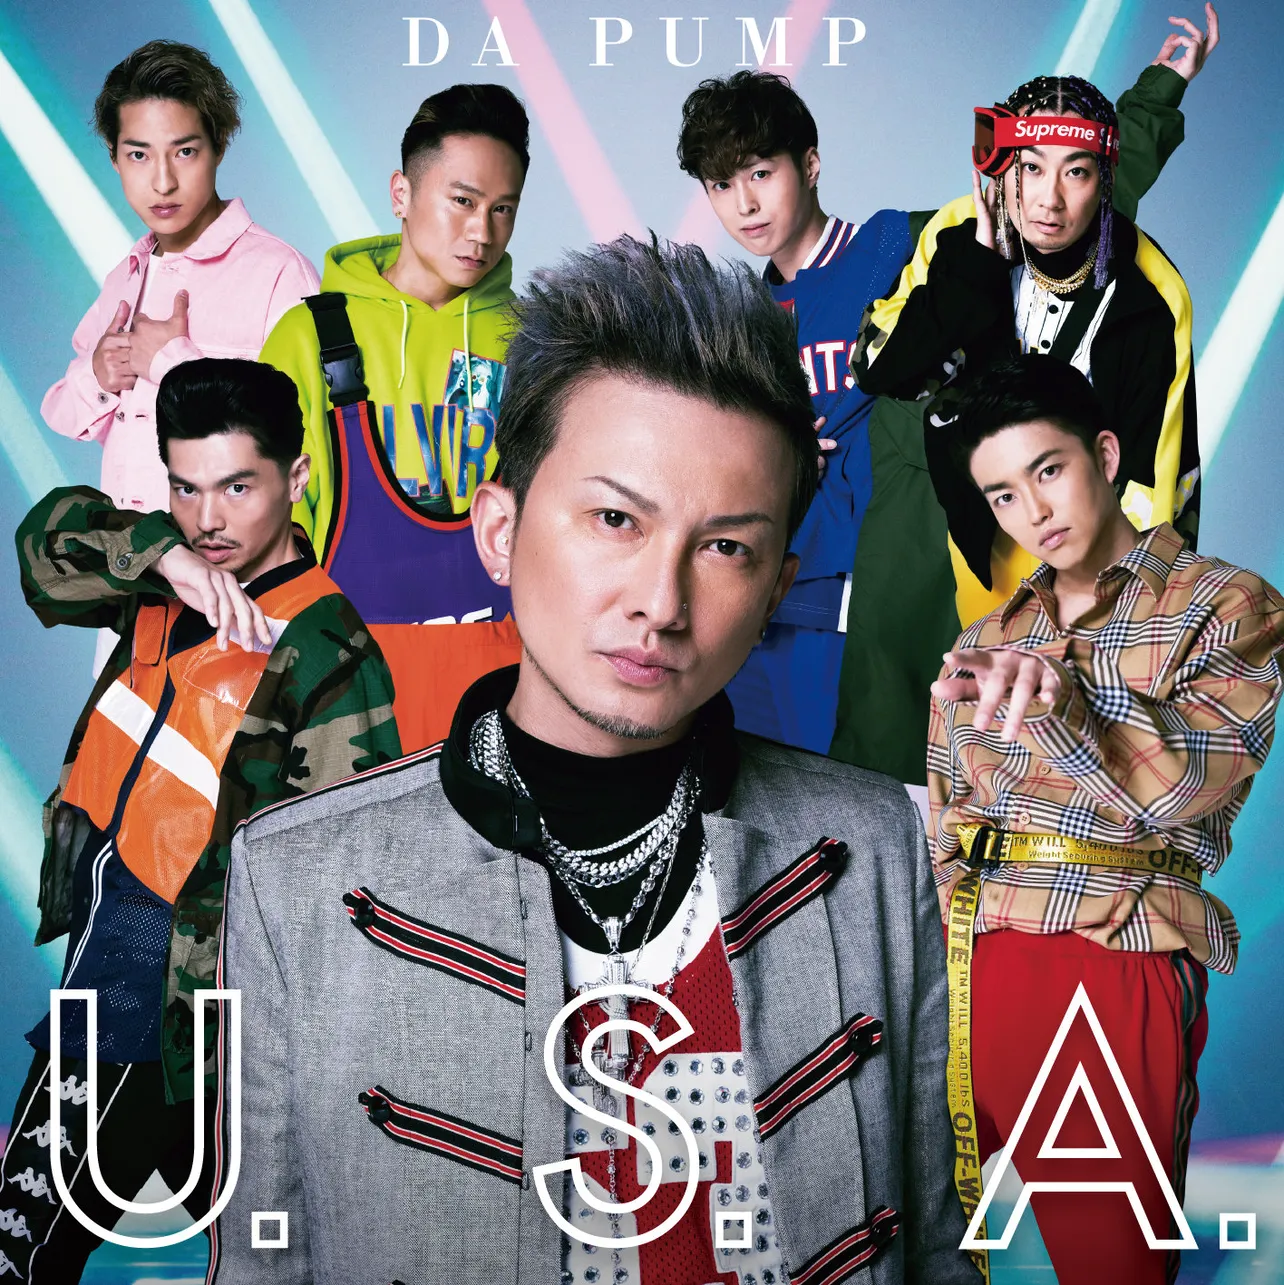 新曲「U.S.A.」【通常盤】(CDのみ)は6月6日(水)に1080円(税込)で発売